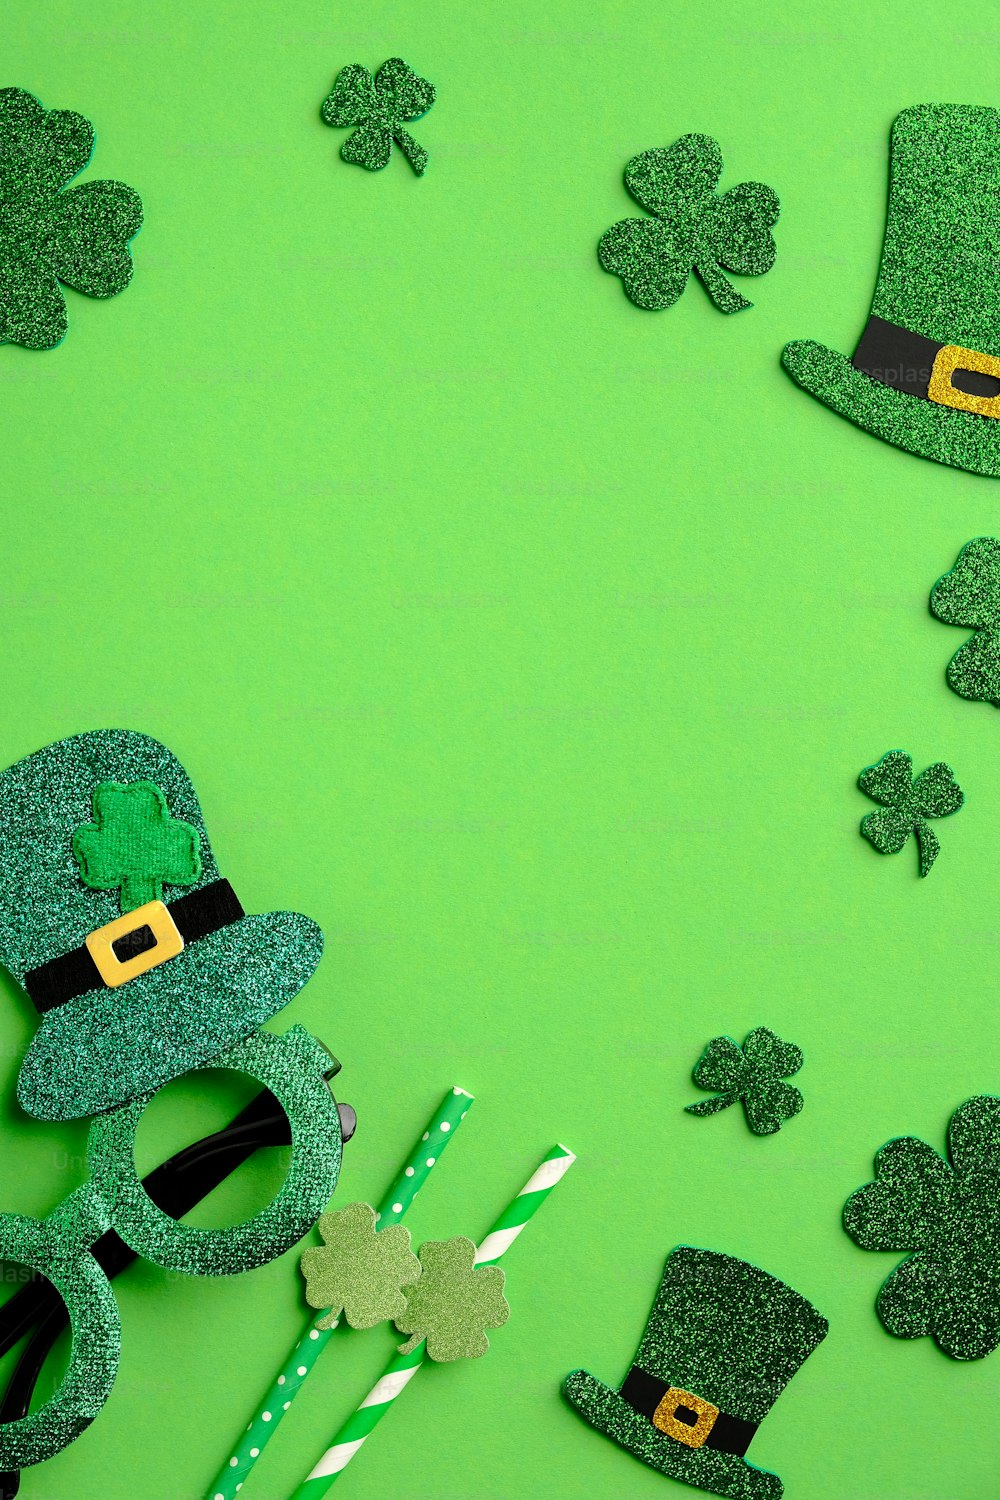 Diseño de banner vertical para el Día de San Patricio. Sombreros de elfo irlandés, hojas de trébol, gafas de fiesta sobre fondo verde con espacio de copia. Concepto de feliz día de San Patricio